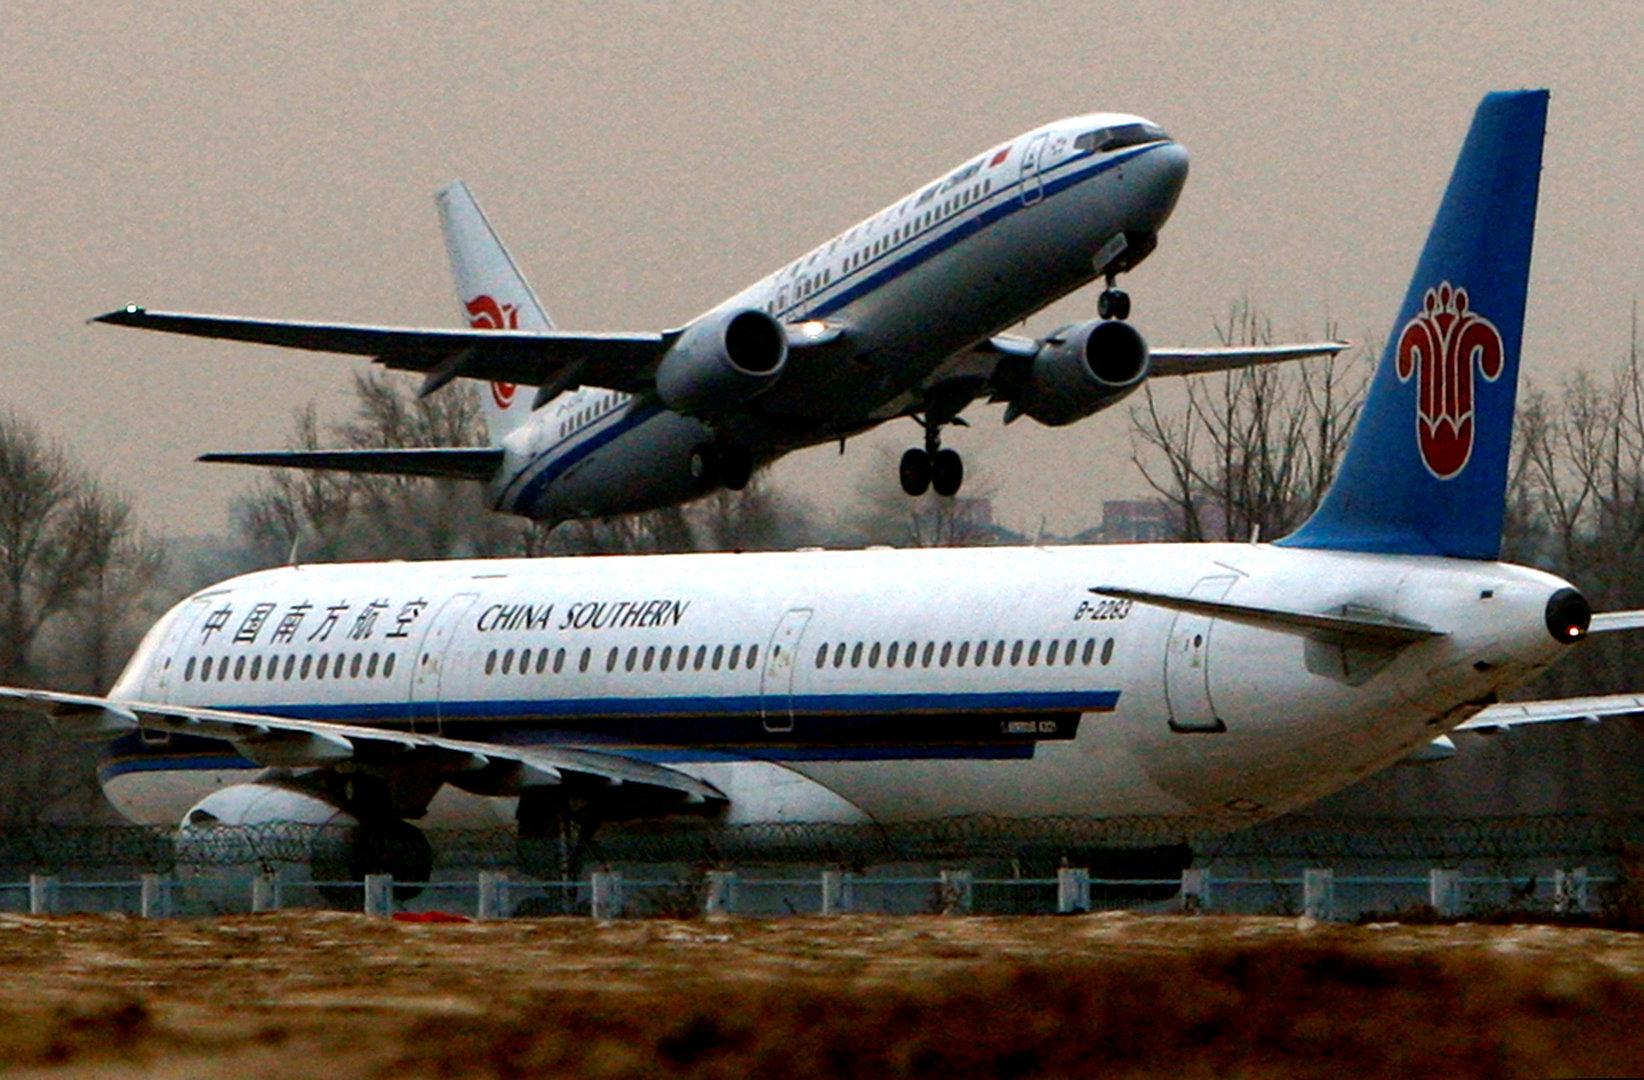 Corona: Belgien will Abwasser von Flugzeugen aus China testen